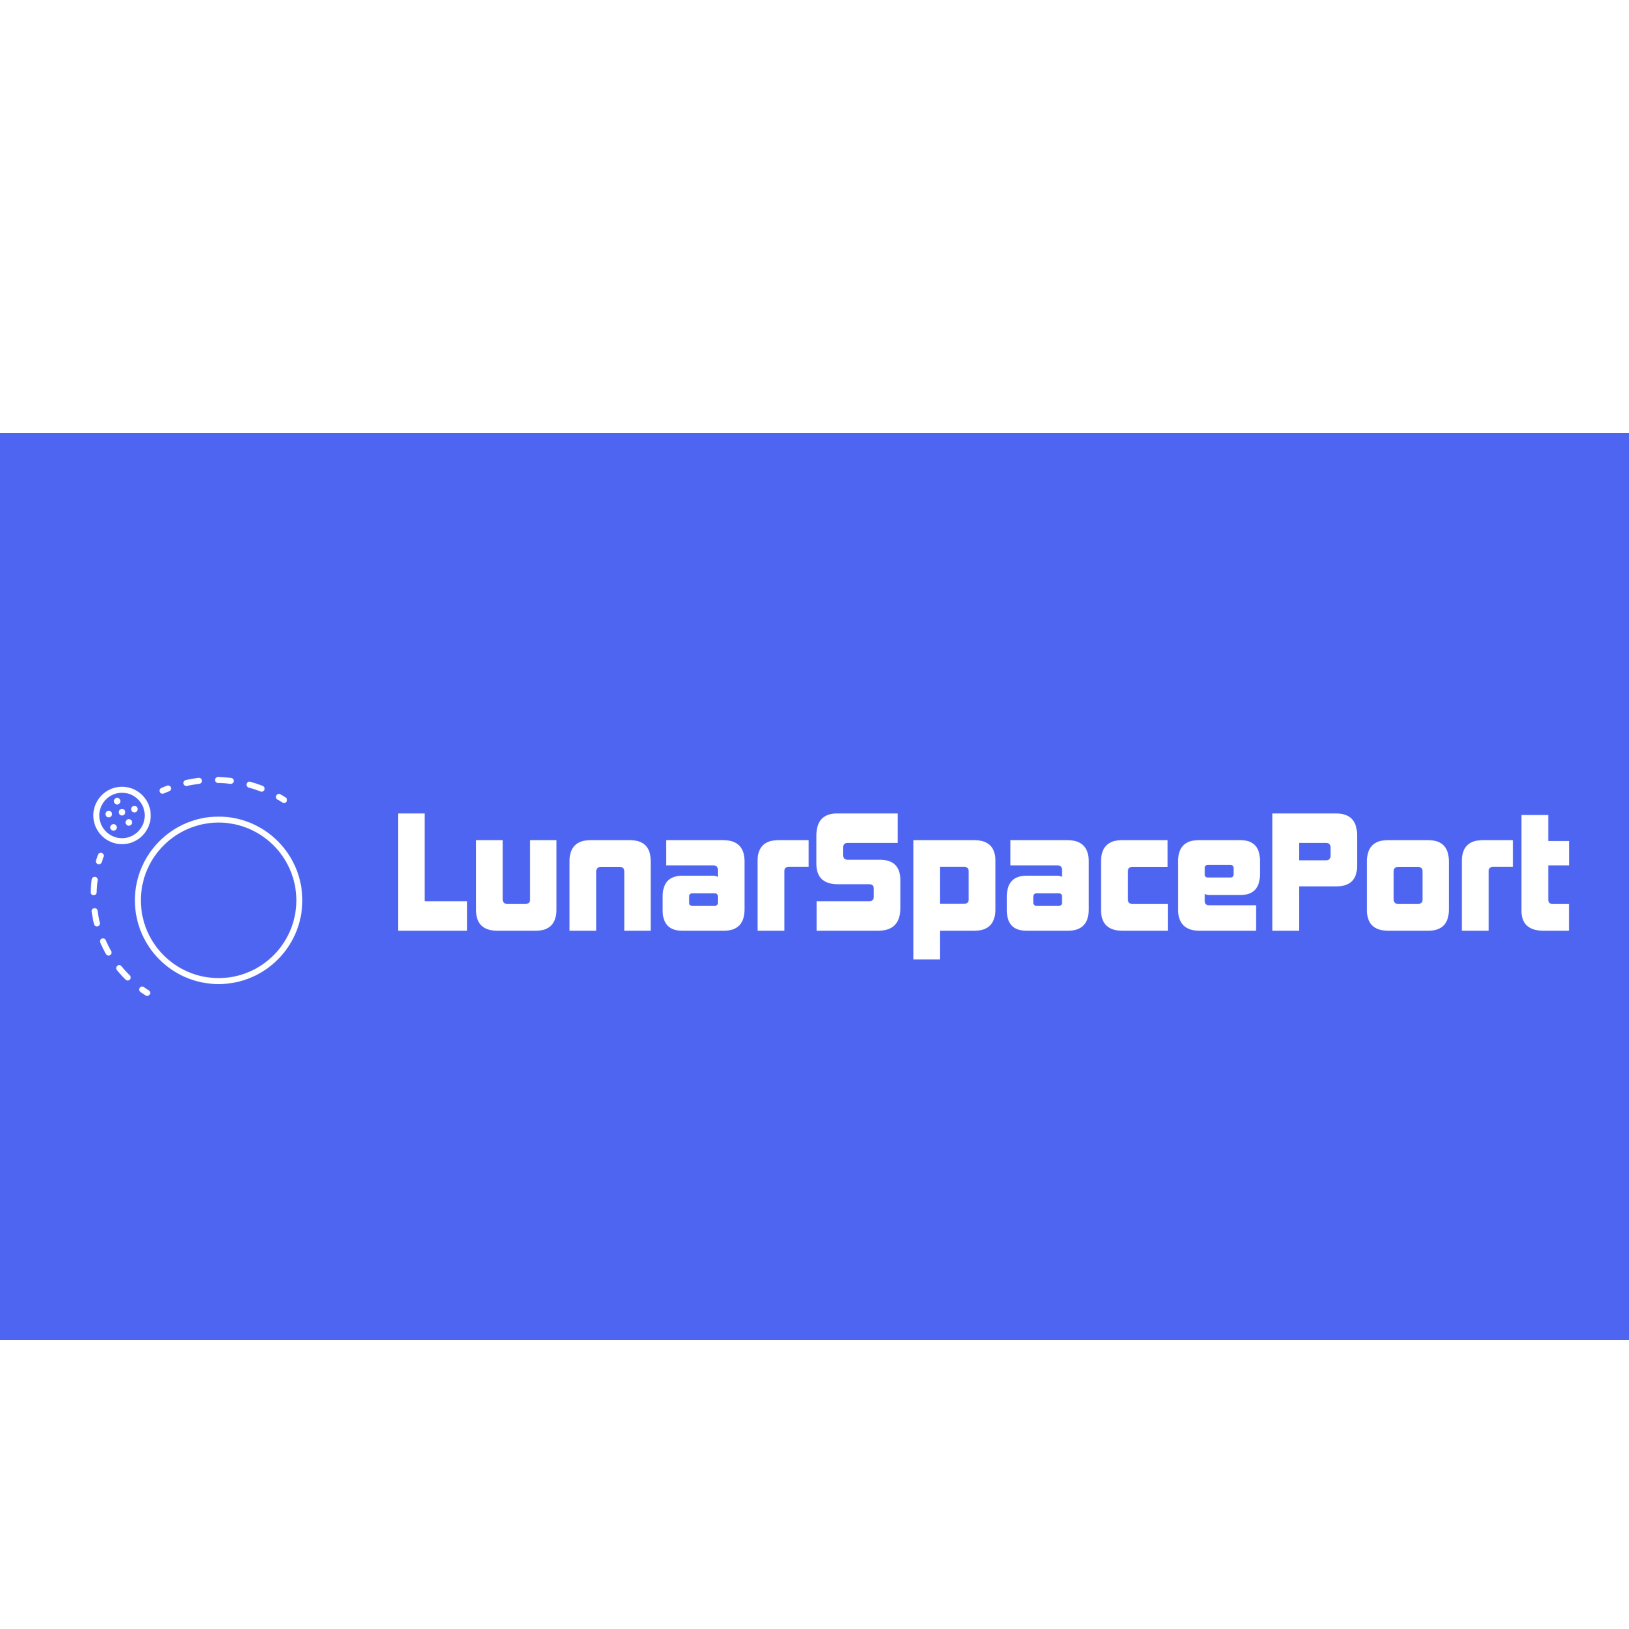 LunarSpacePort